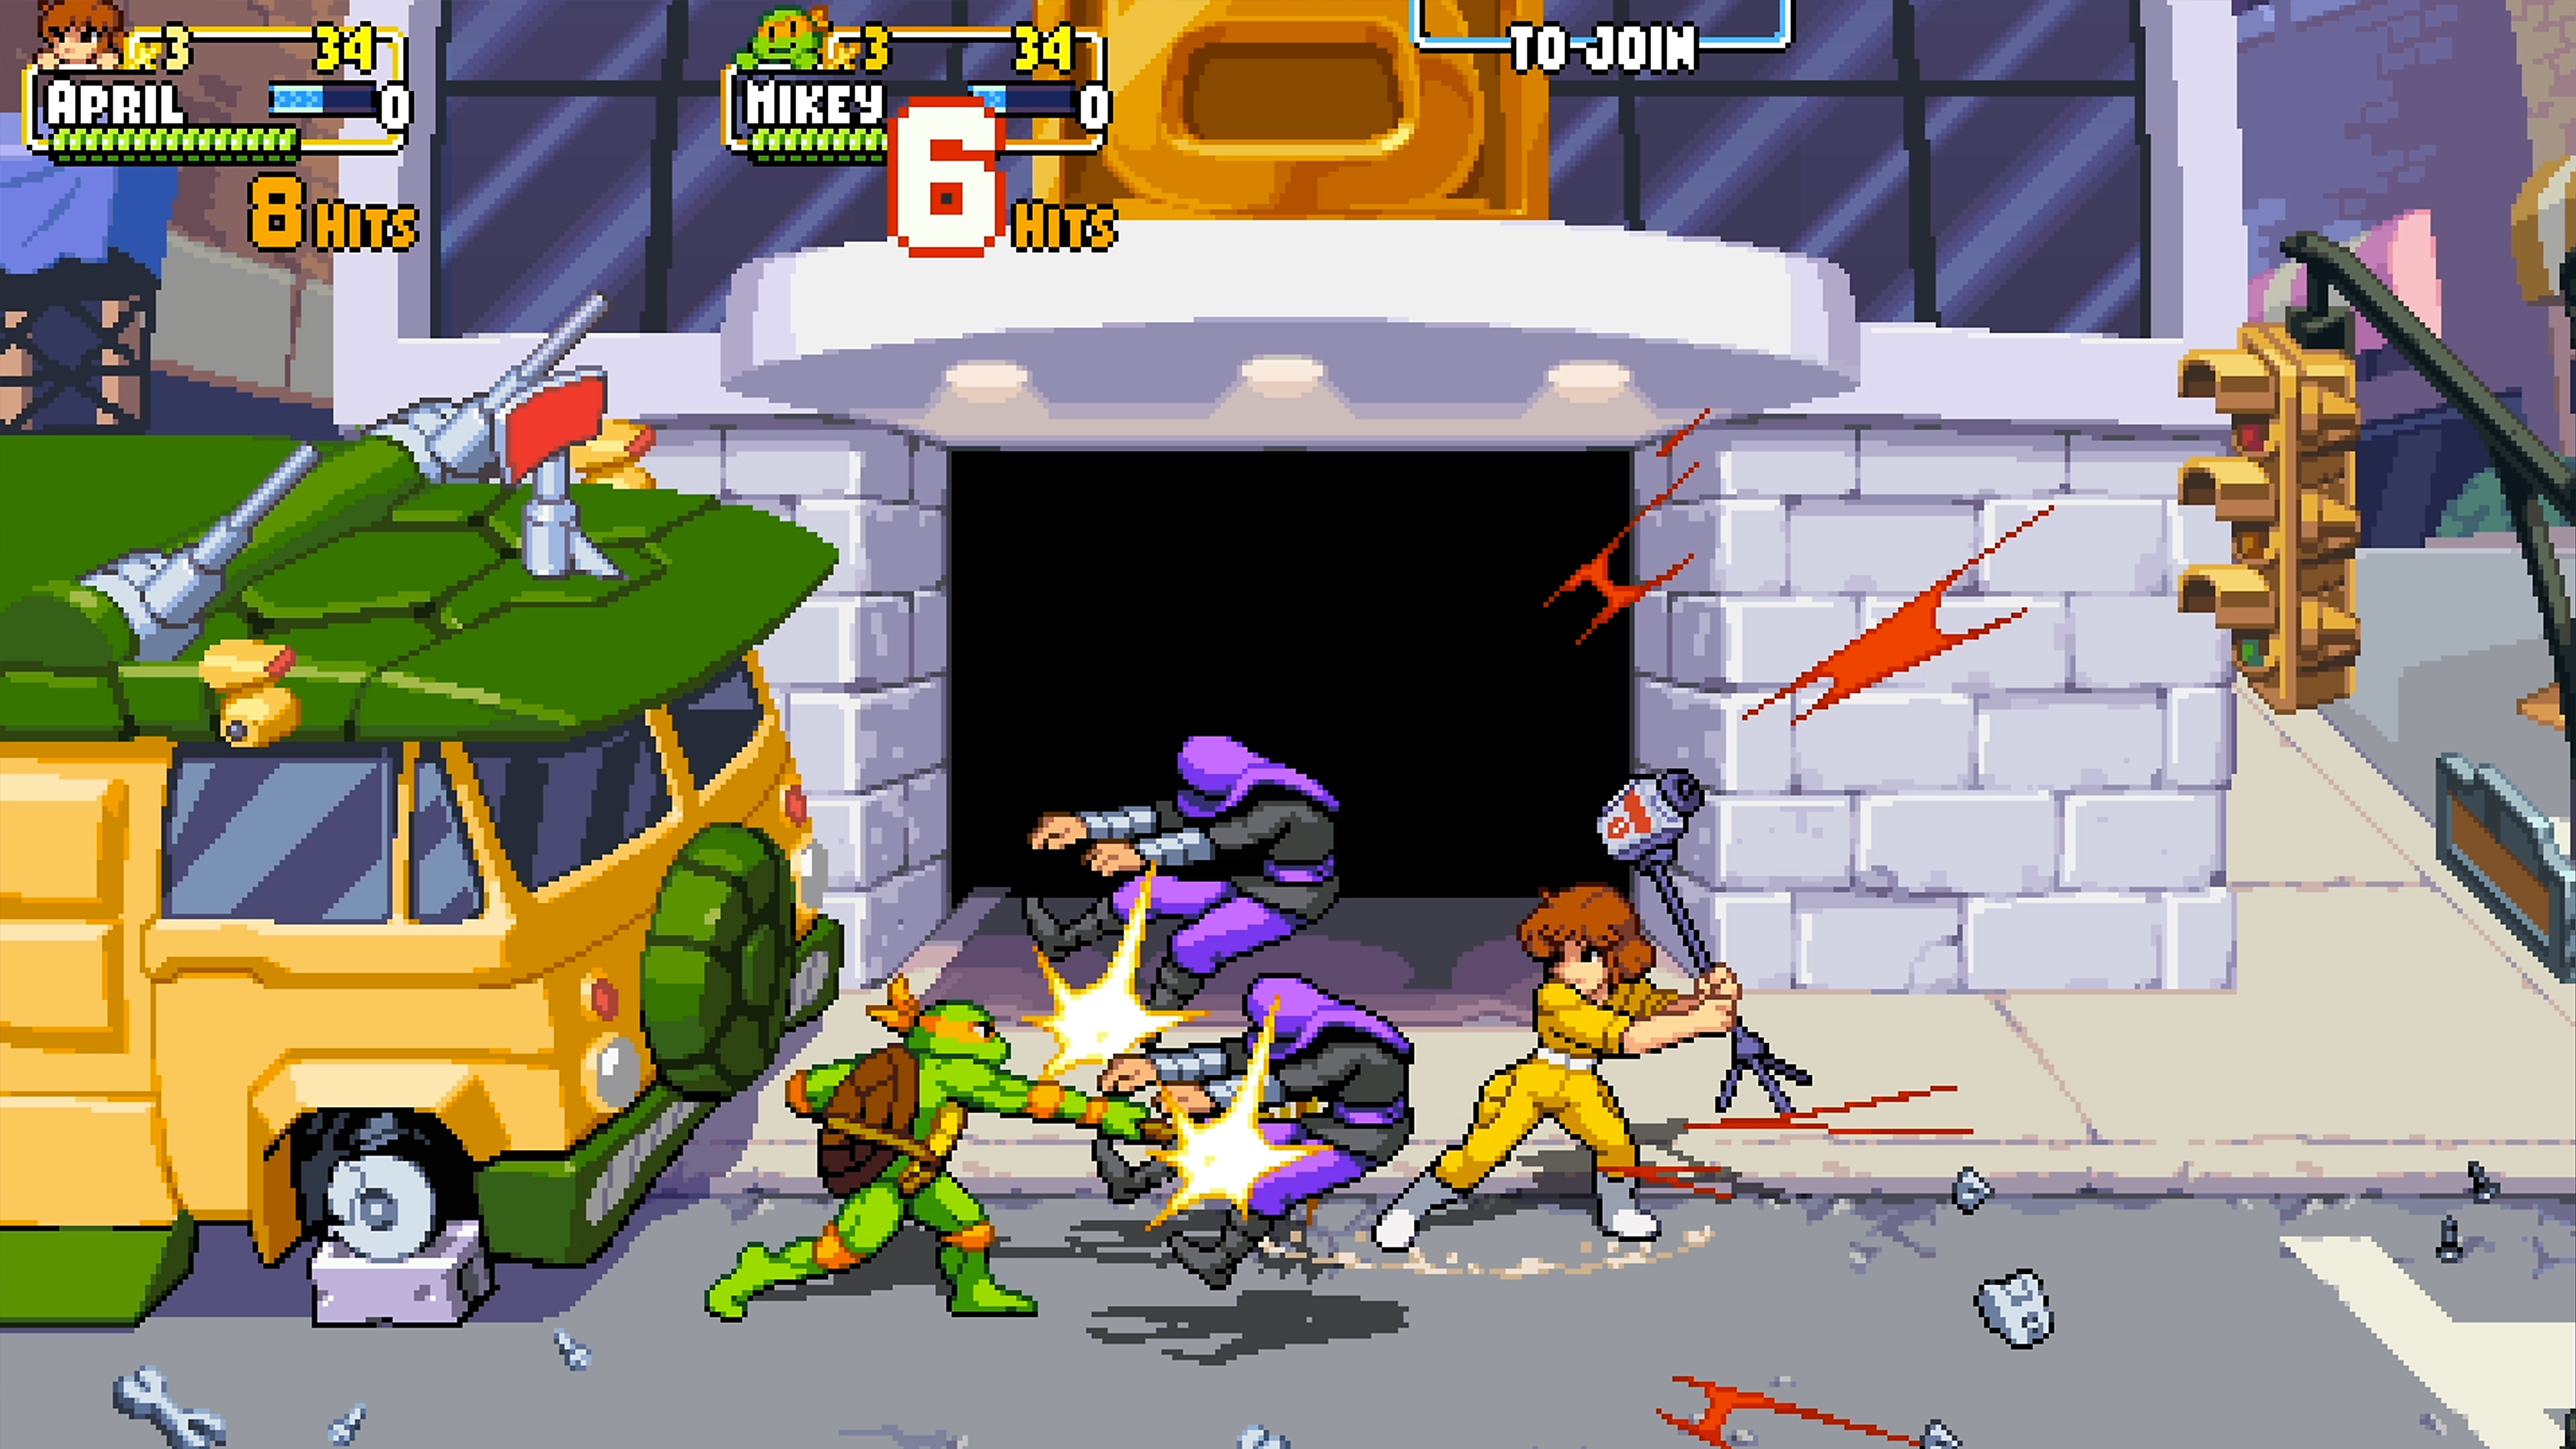 Teenage Mutant Ninja Turtles: Shredder's Revenge — снимок экрана